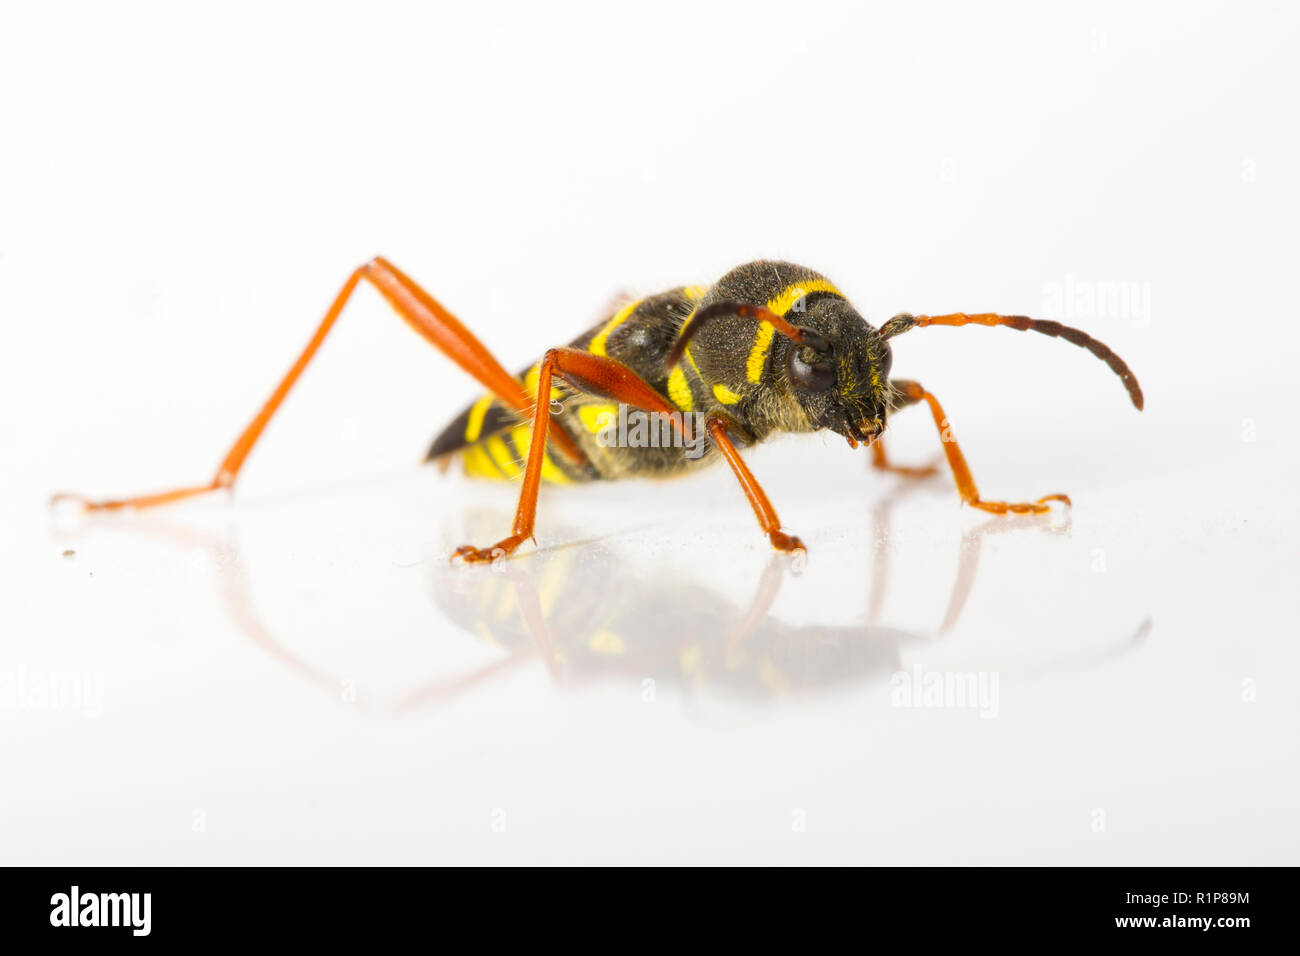 Wasp beetle (Clytus arietis) adulte, insecte photographié sur un fond blanc. Powys, Pays de Galles. De juin. Banque D'Images